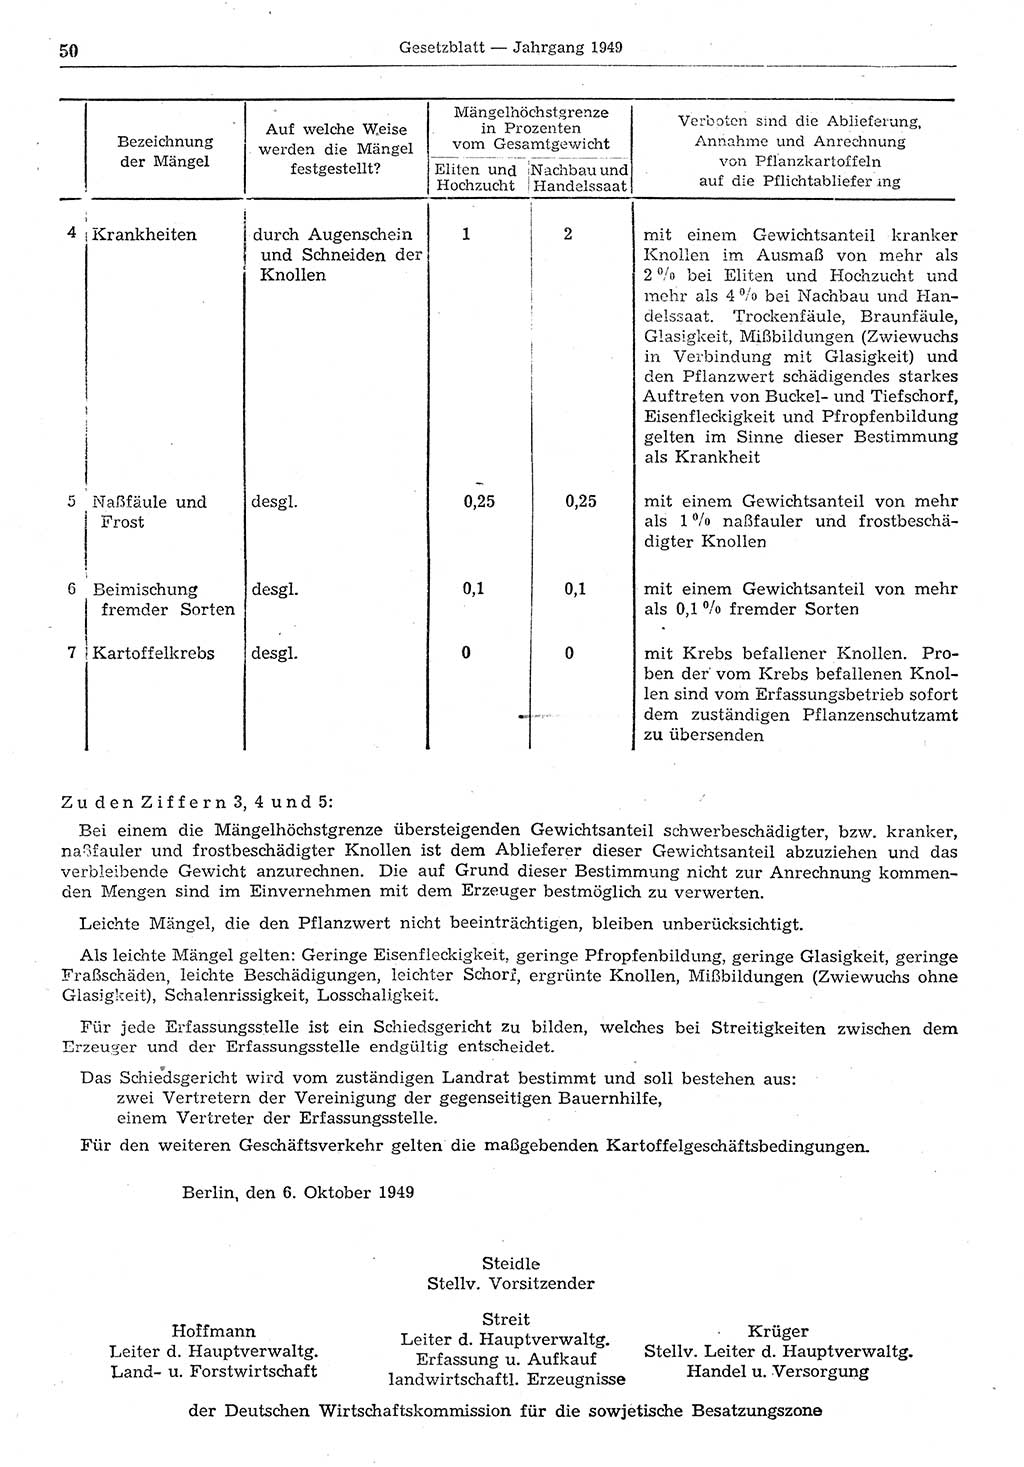 Gesetzblatt (GBl.) der Deutschen Demokratischen Republik (DDR) 1949, Seite 50 (GBl. DDR 1949, S. 50)